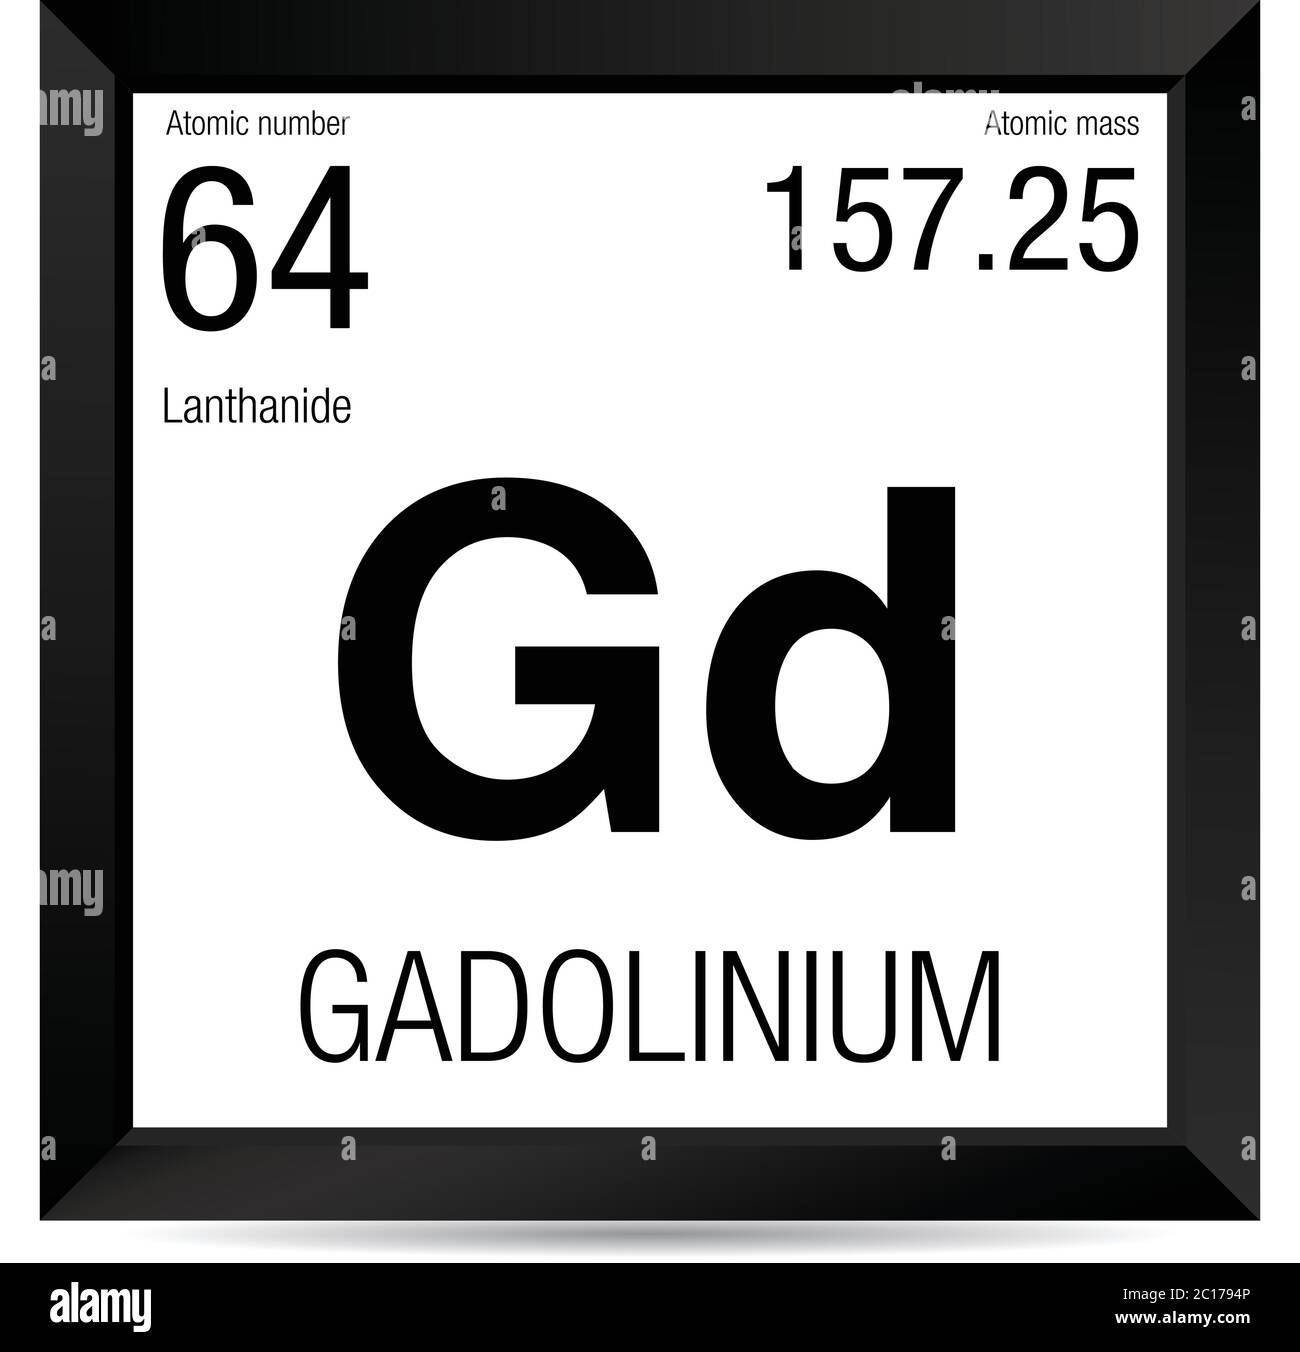 Boum 2 Avril 2022 - Page 2 Symbole-de-gadolinium-element-numero-64-du-tableau-periodique-des-elements-chimie-cadre-carre-noir-avec-fond-blanc-2c1794p